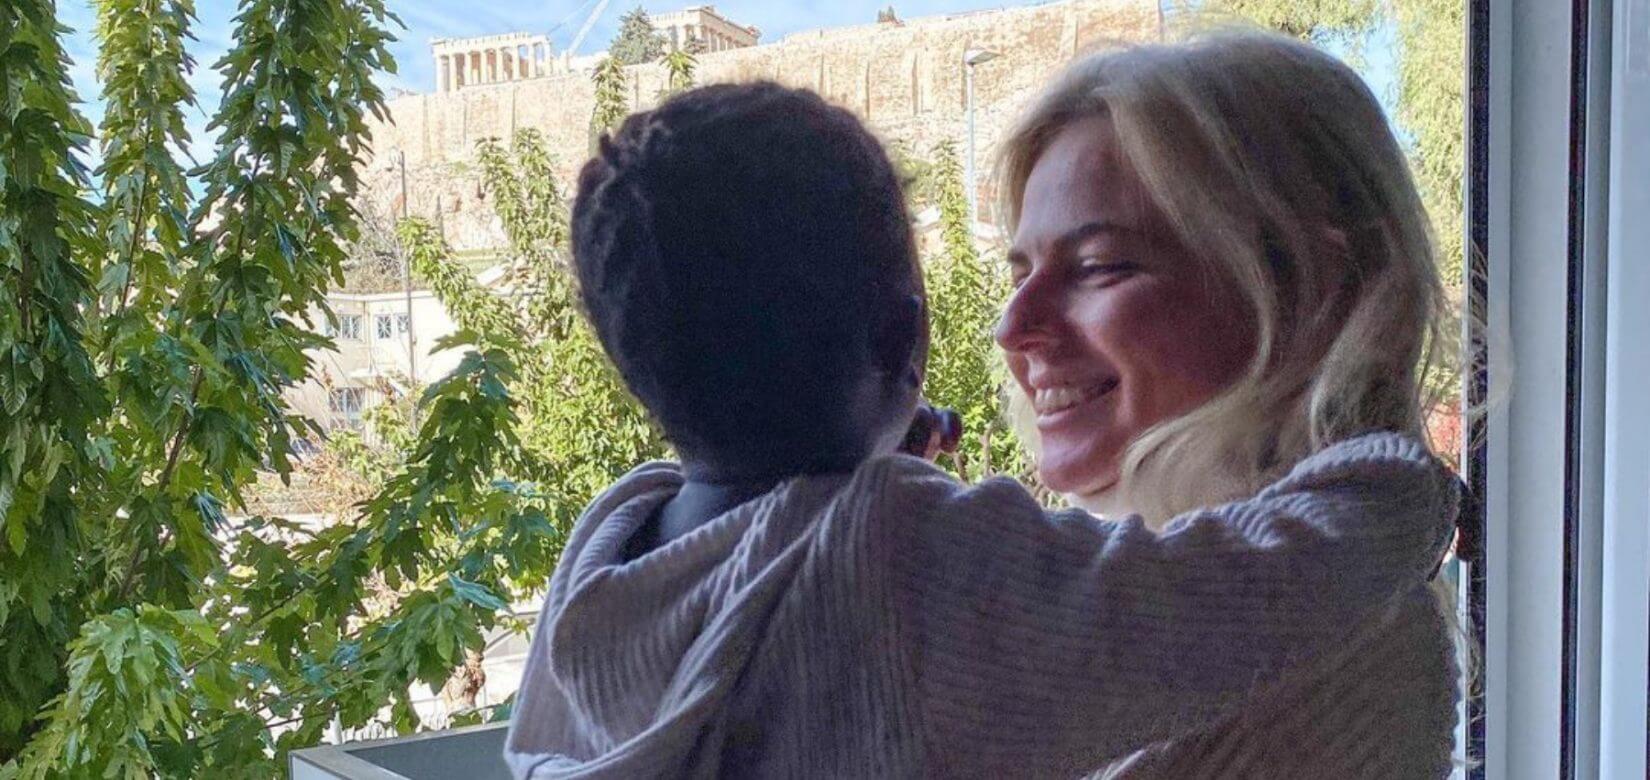 Η Χριστίνα Κόντοβα μυεί την Ada στον ελληνικό πολιτισμό - Μητέρα και κόρη στο μουσείο της Ακρόπολης (pic)